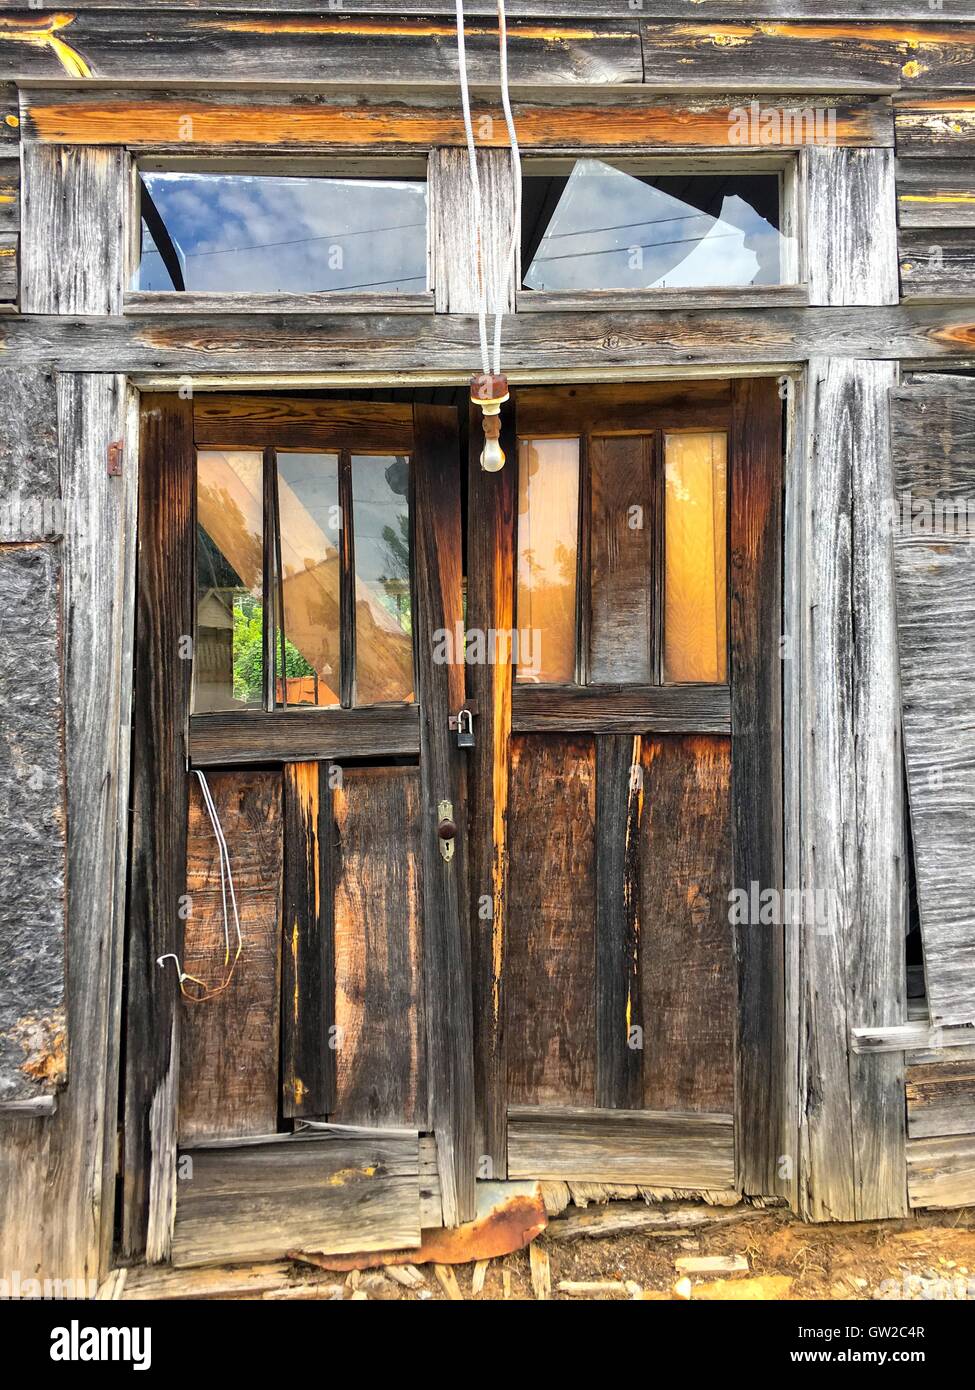 Haustüren, eine alte verlassene Holzschuppen.  Ein Licht nach unten hängt und das Glas im Doppel ist gebrochen. Stockfoto